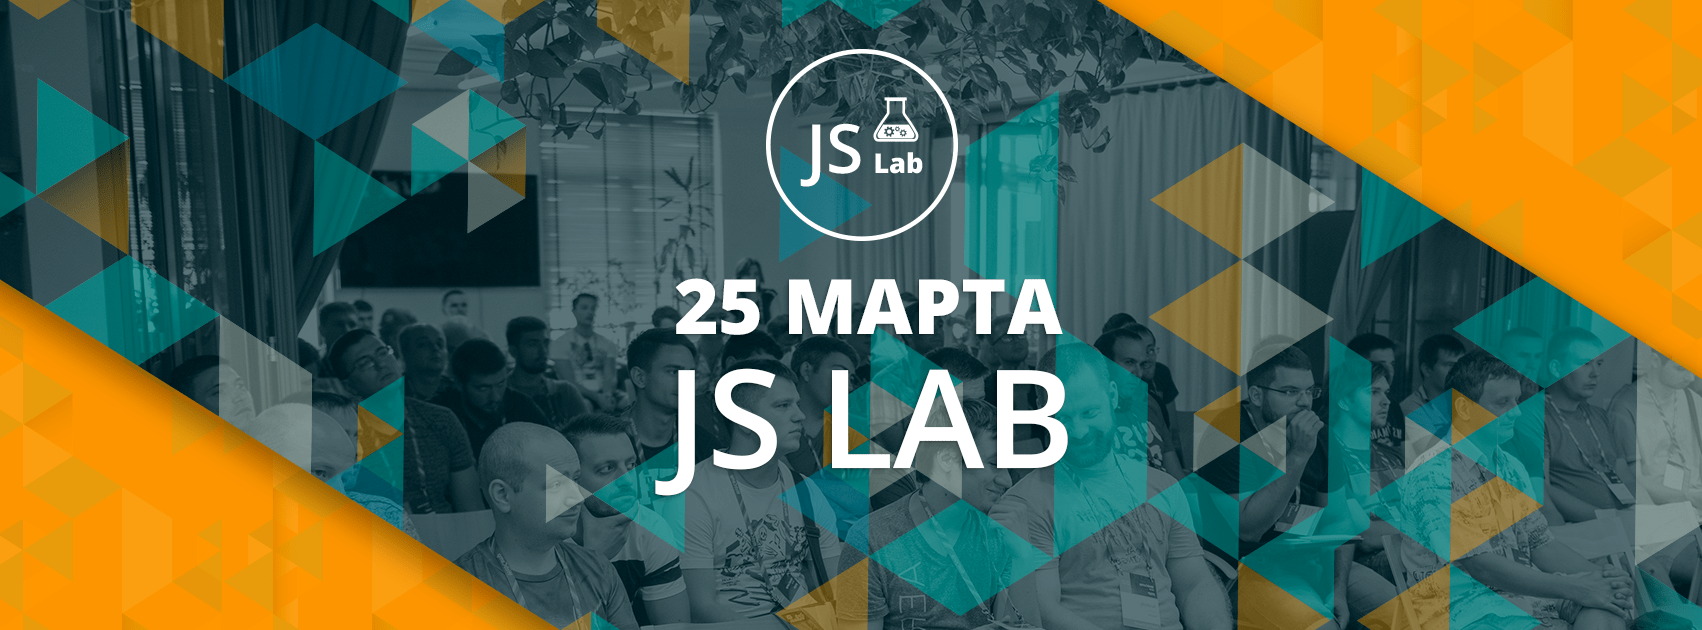 Третья ежегодная конференция JavaScript-разработчиков в Одессе — JS Lab - 1